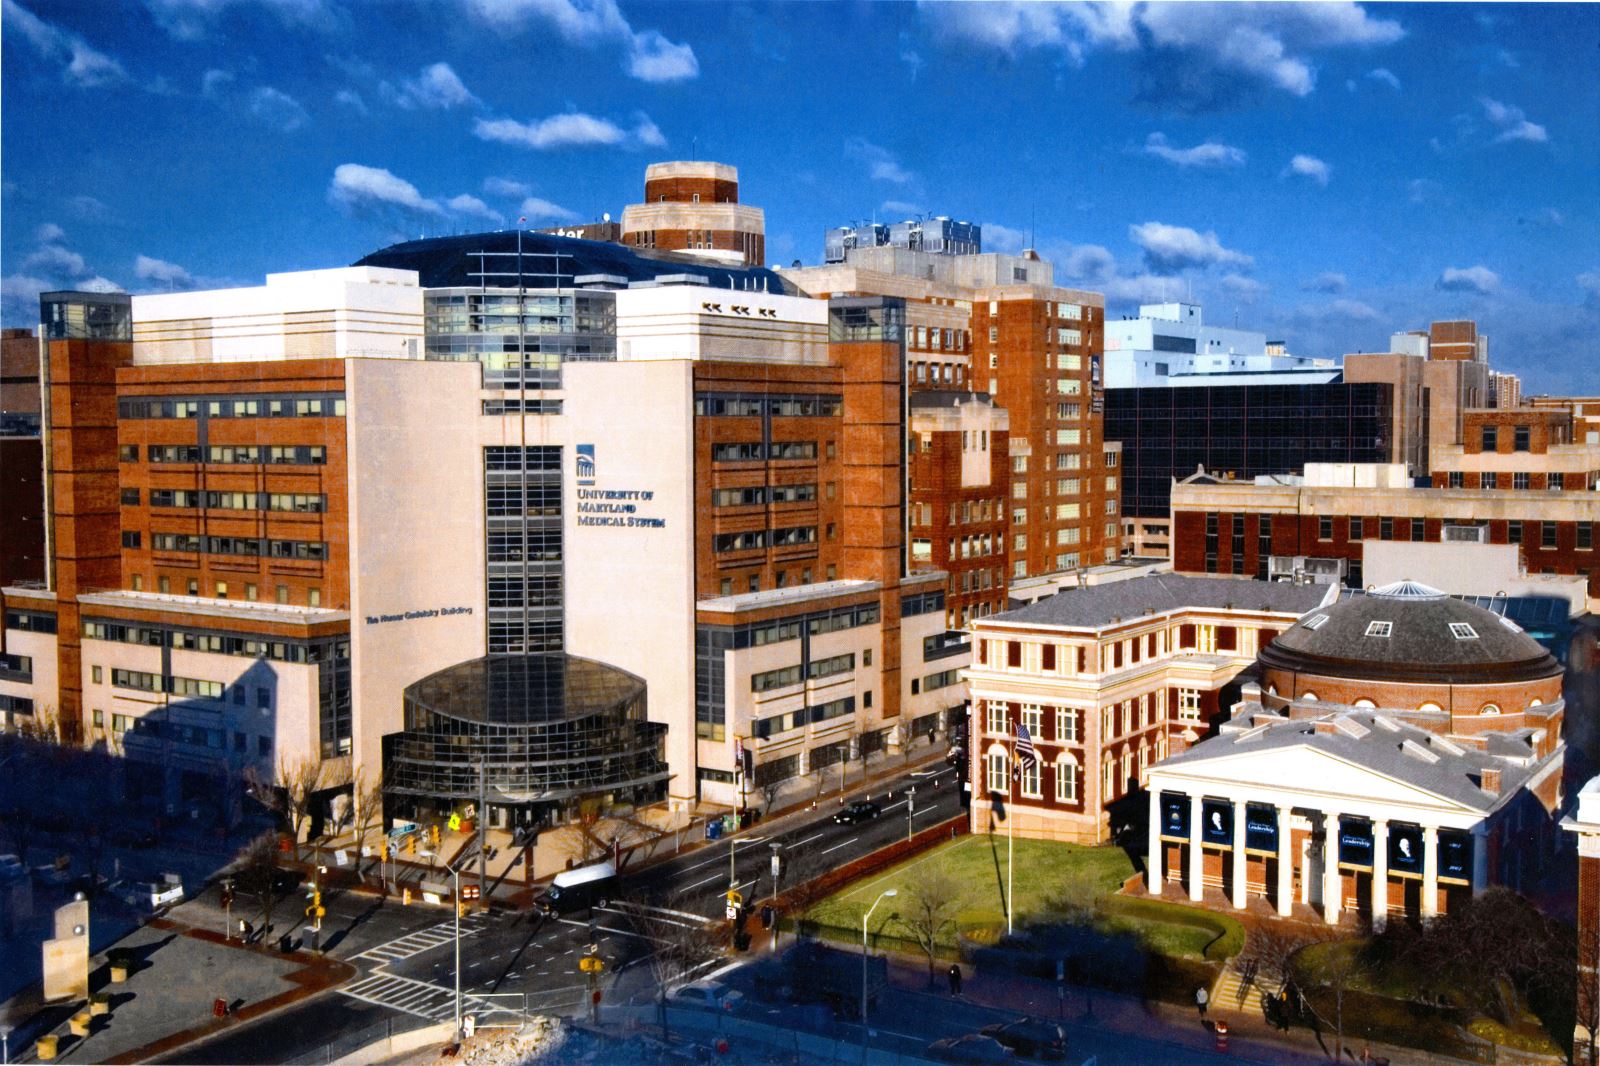 University of Maryland Main Campus Photo